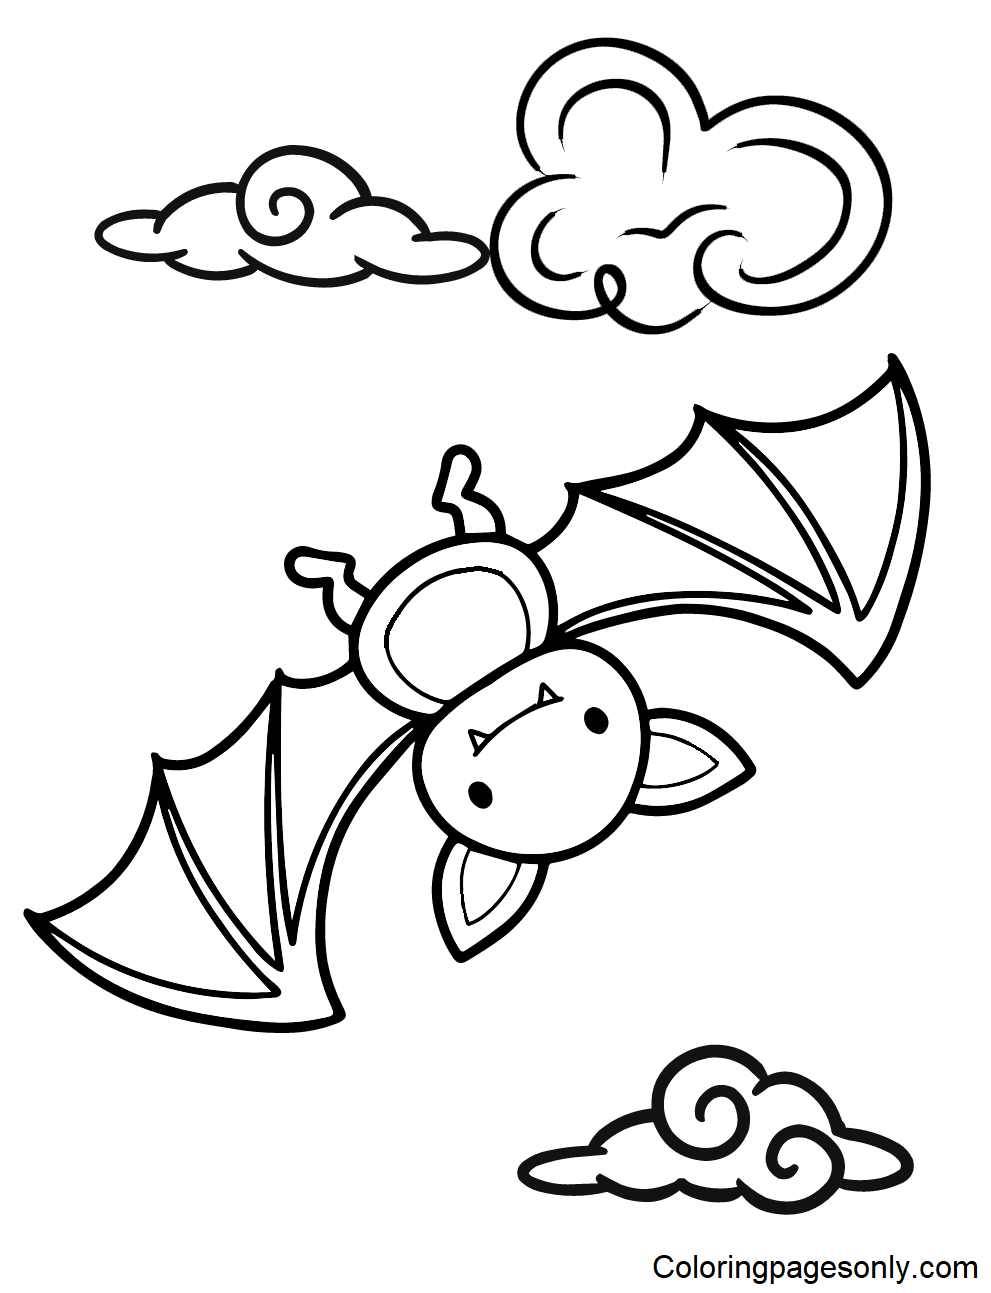 Bat color Sheets Coloring Page